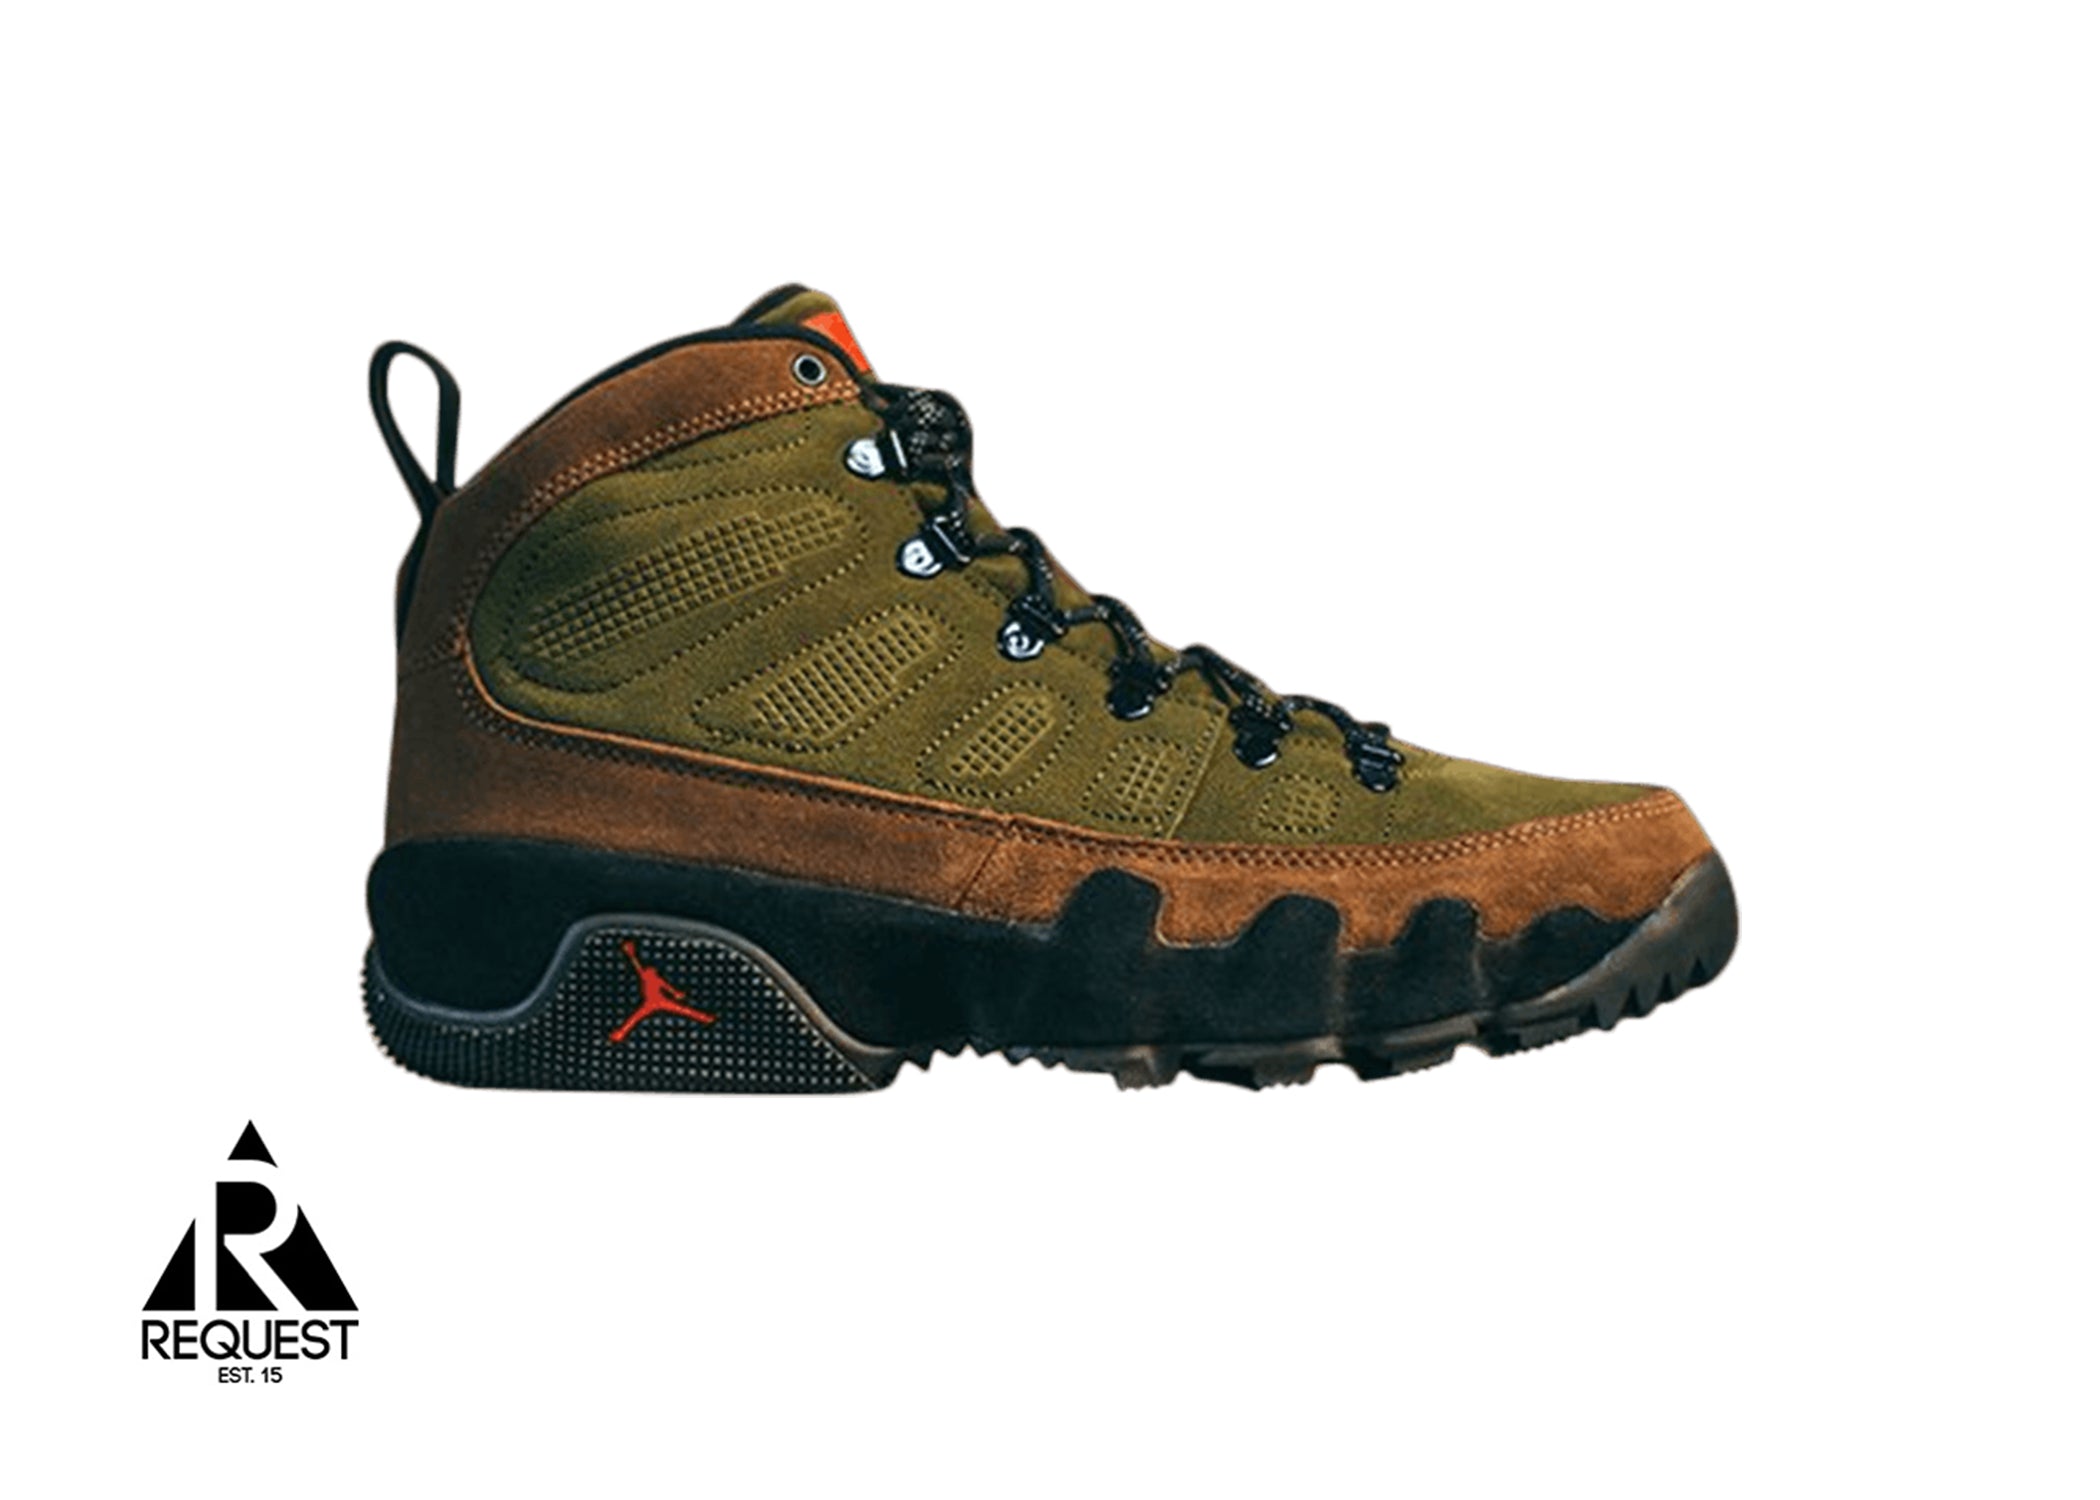 Air Jordan Retro 9 Boot “Olive”